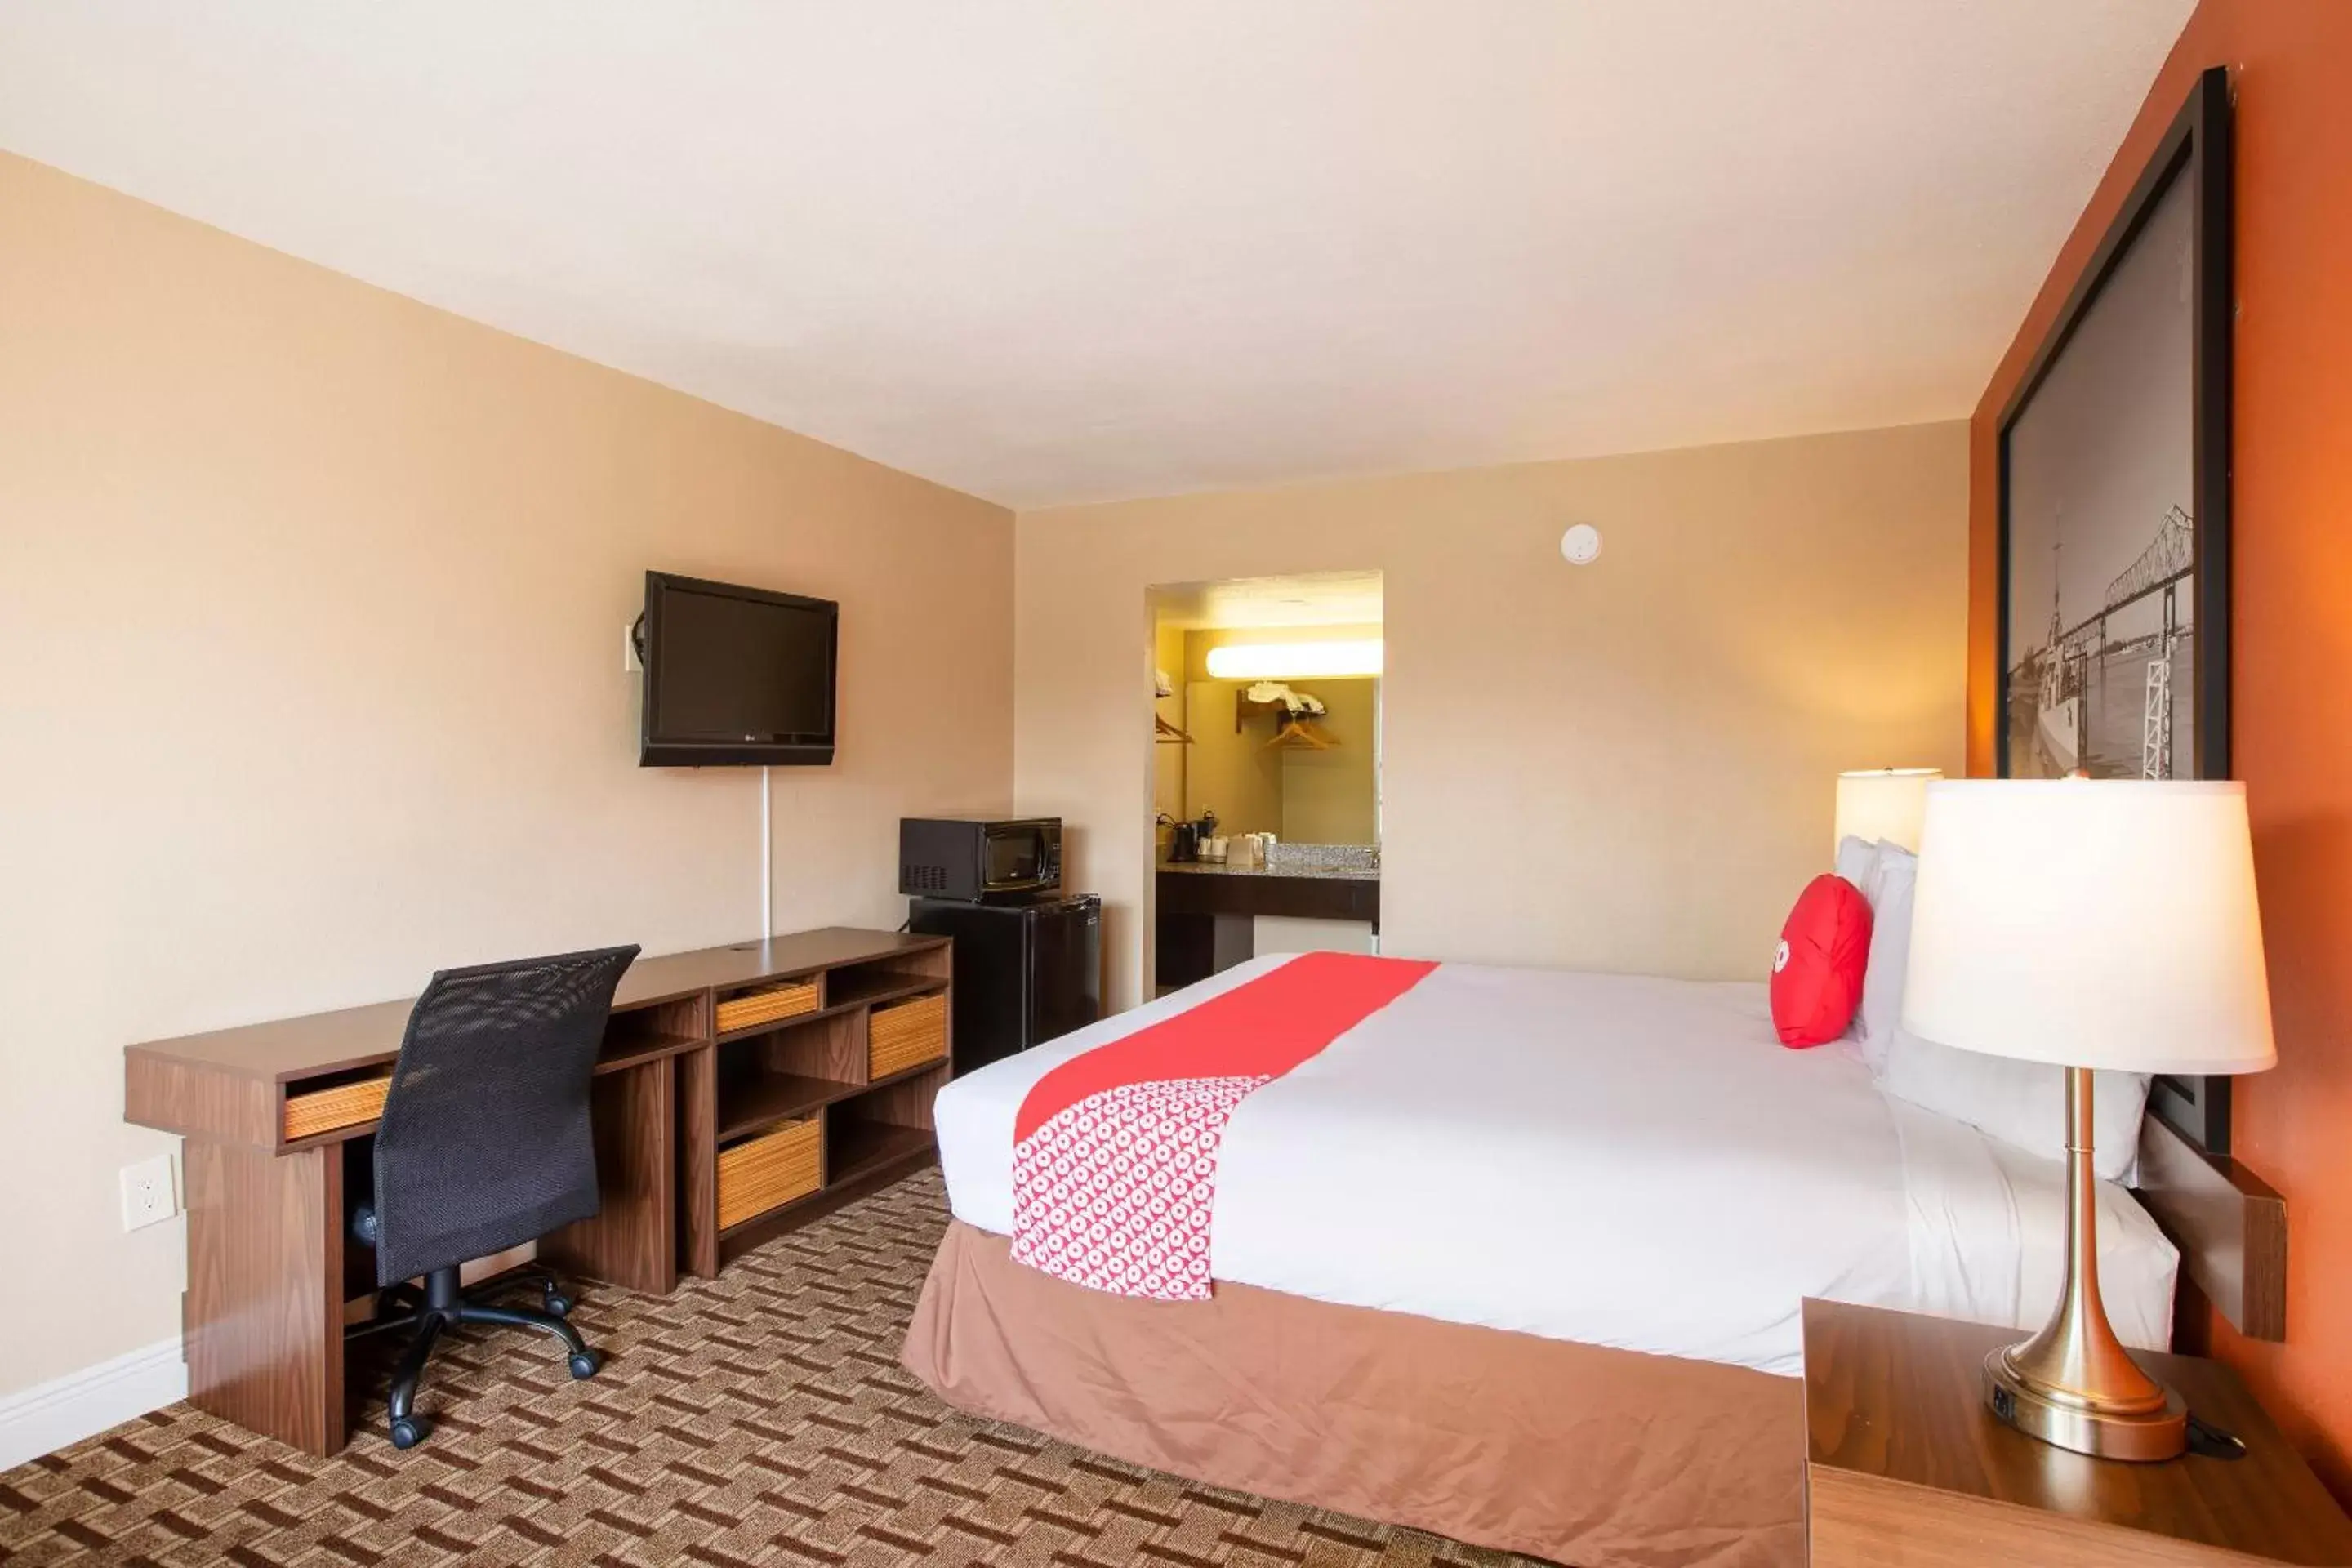 Bedroom in OYO Hotel Port Allen LA I-10 West